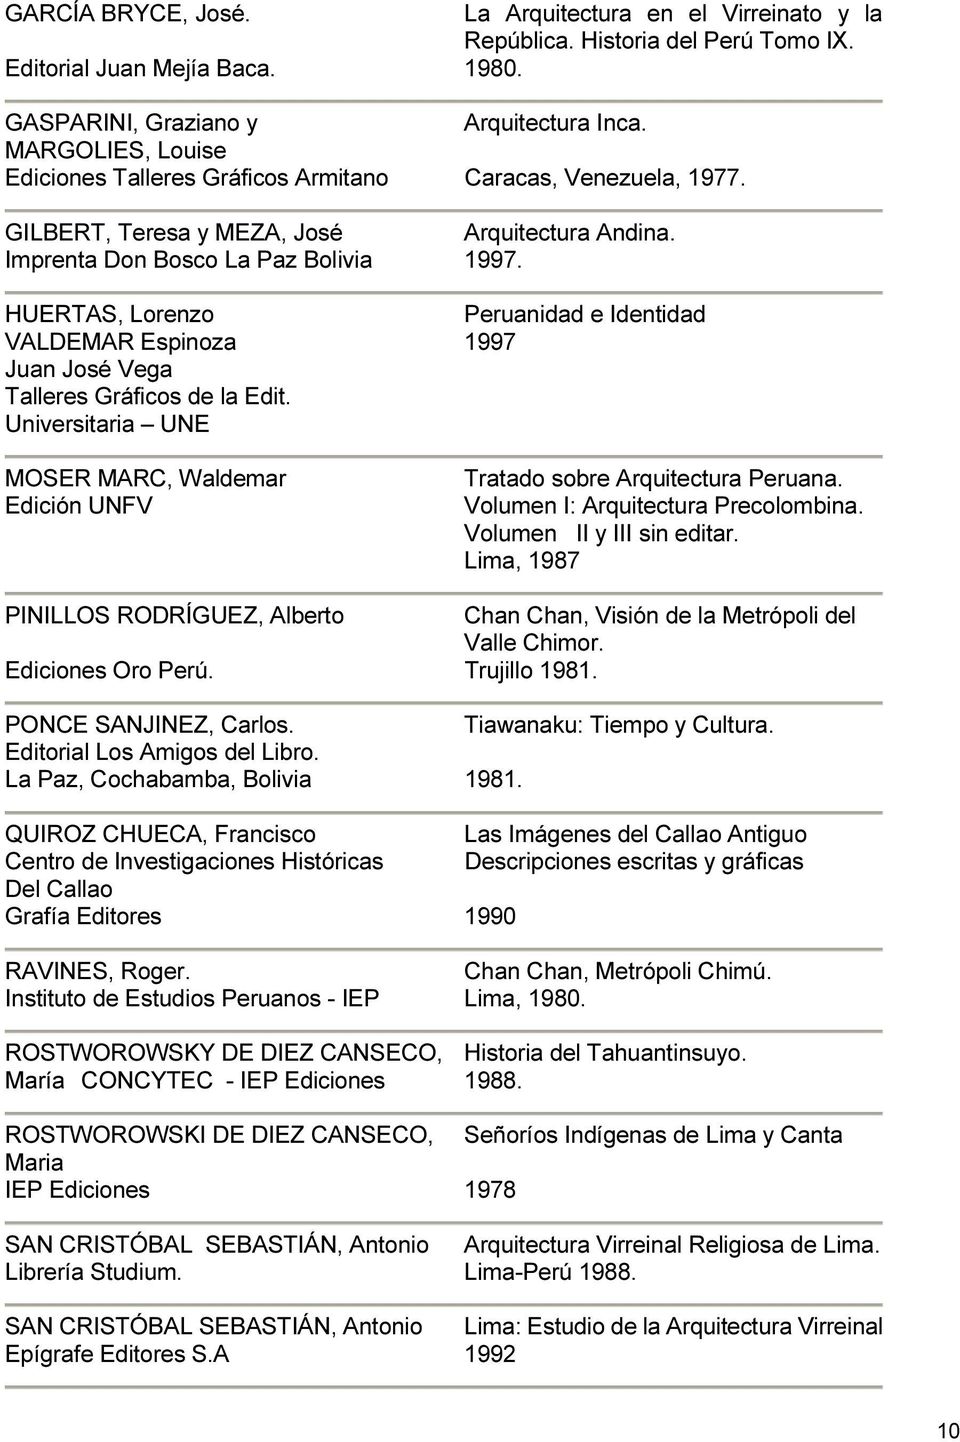 HUERTAS, Lorenzo Peruanidad e Identidad VALDEMAR Espinoza 1997 Juan José Vega Talleres Gráficos de la Edit. Universitaria UNE MOSER MARC, Waldemar Edición UNFV Tratado sobre Arquitectura Peruana.